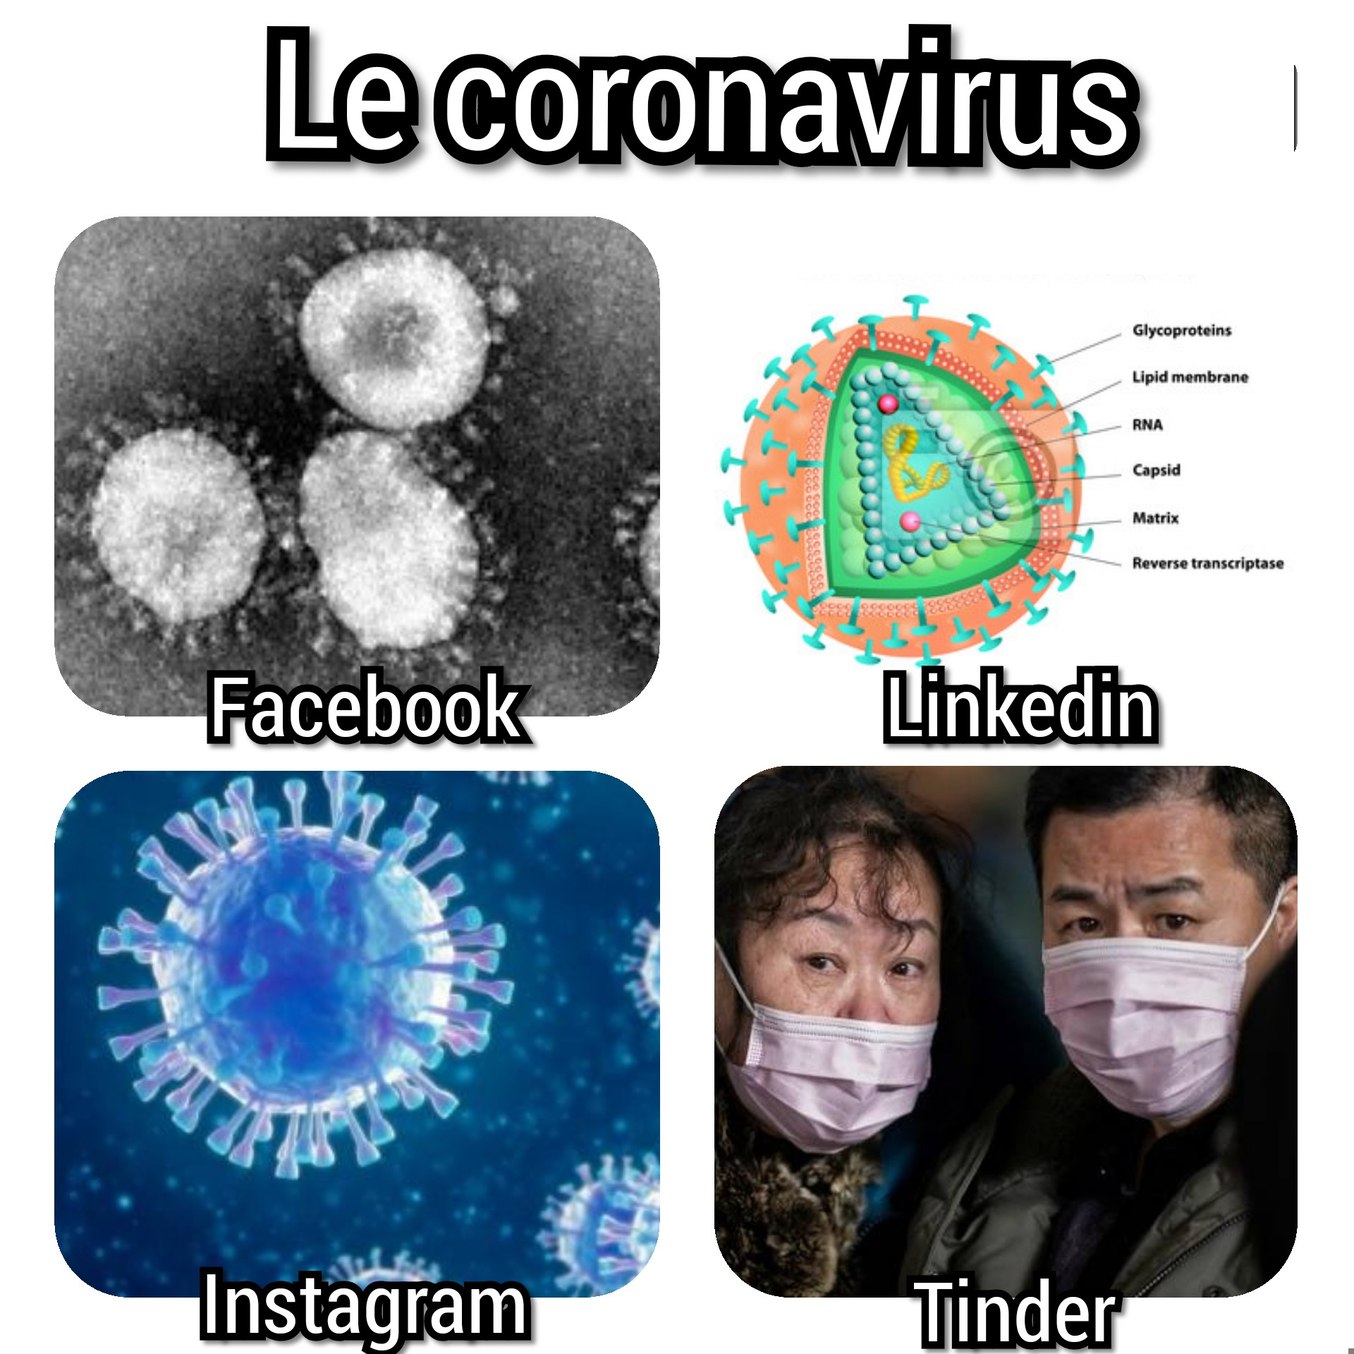 Le coronavirus - meme